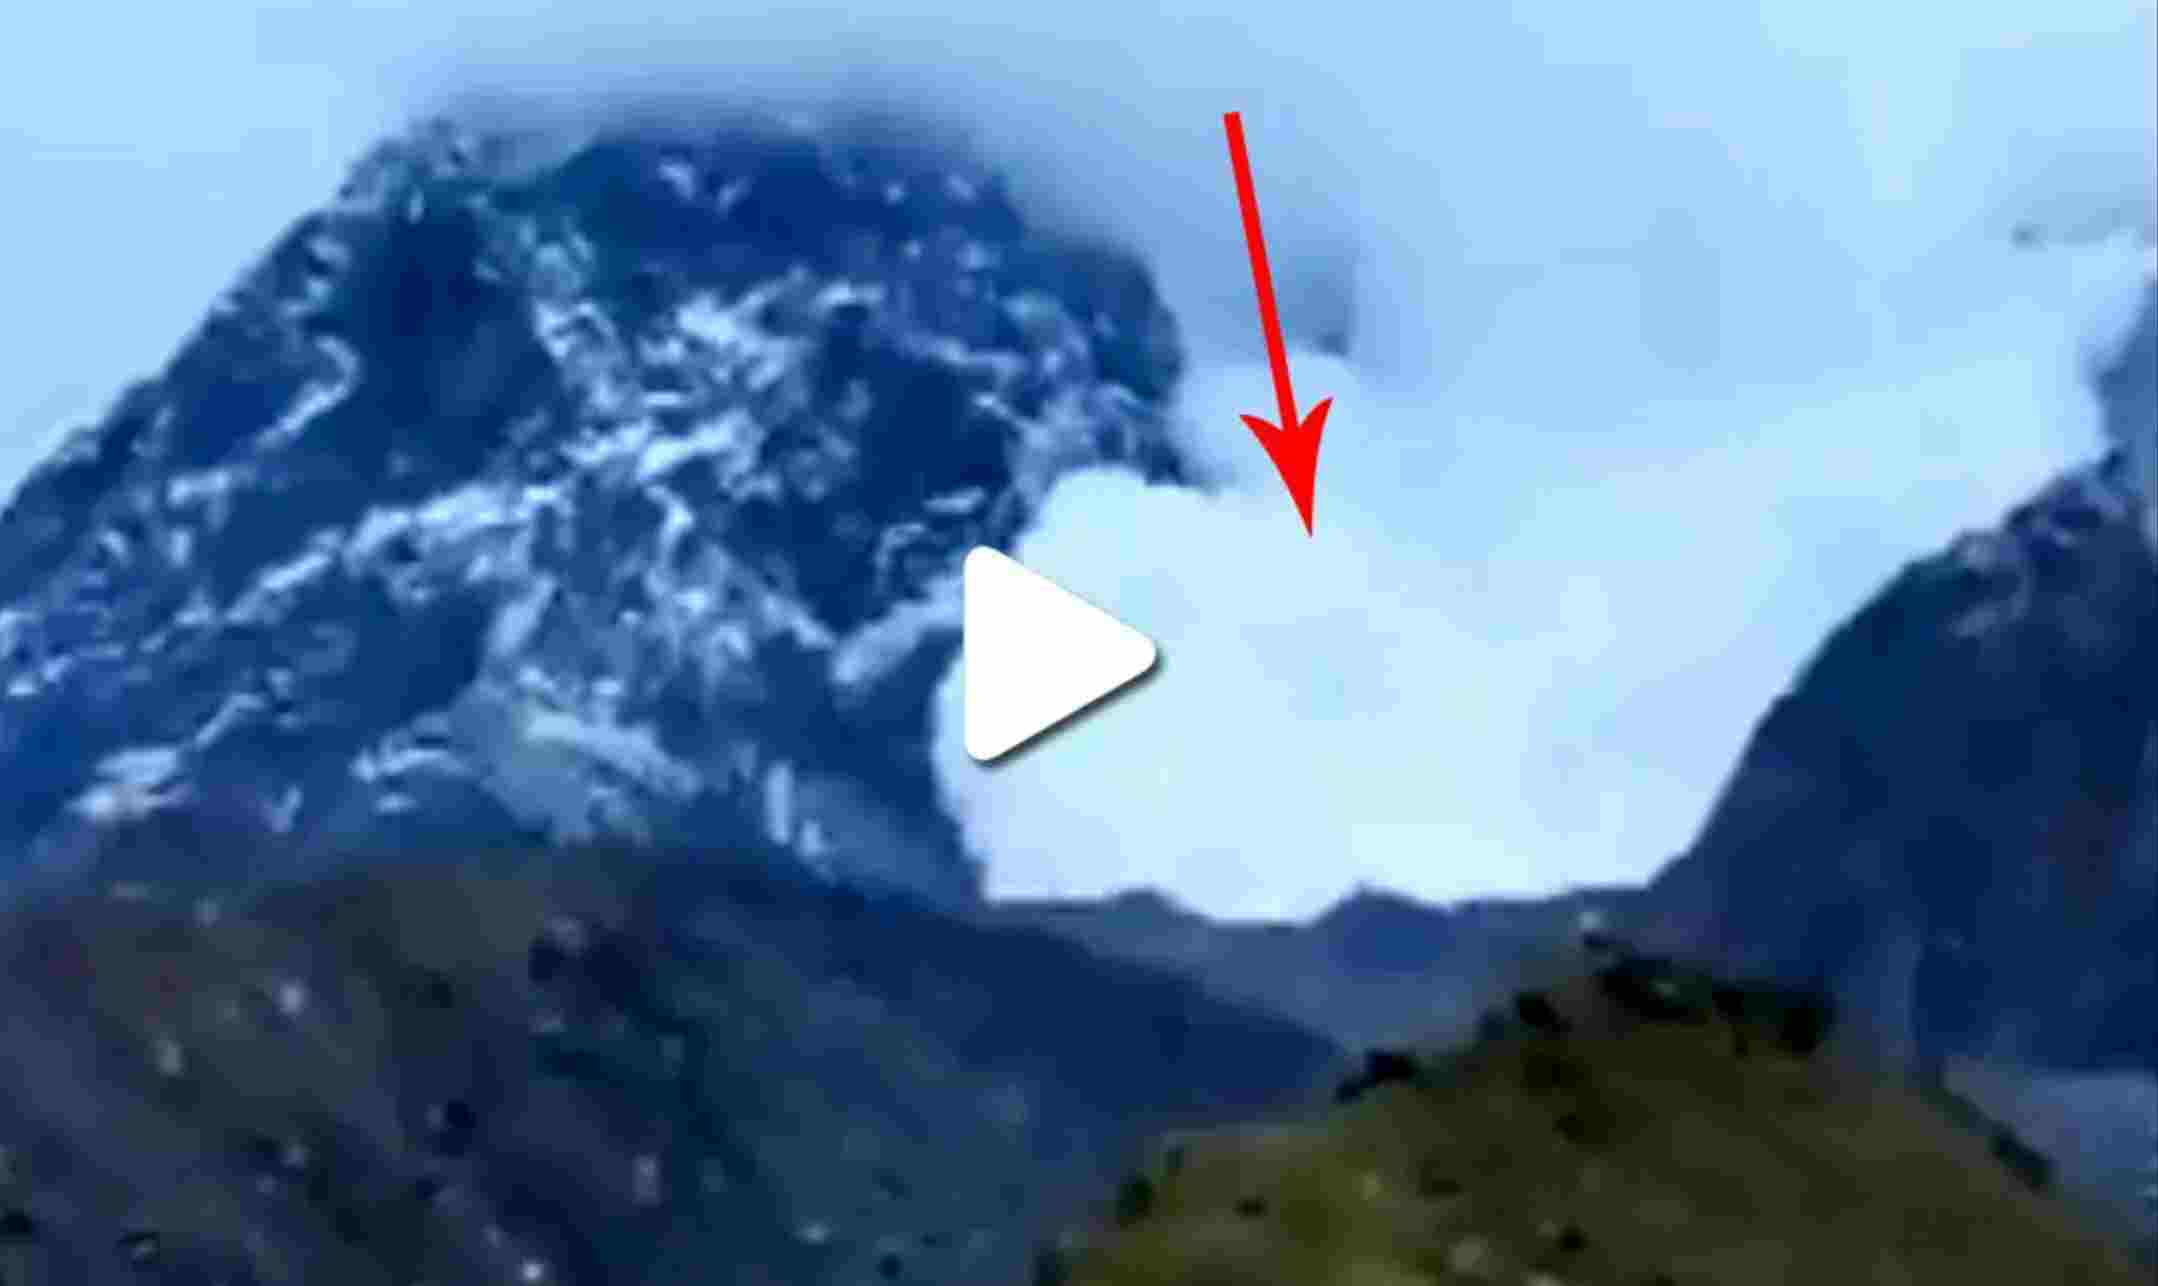 Kedarnath News Today: केदारनाथ के पास गिरा बर्फ का पहाड़, वीडियो देखकर काँप जाएंगे आप, (Watch Kedarnath Avalanche Video)